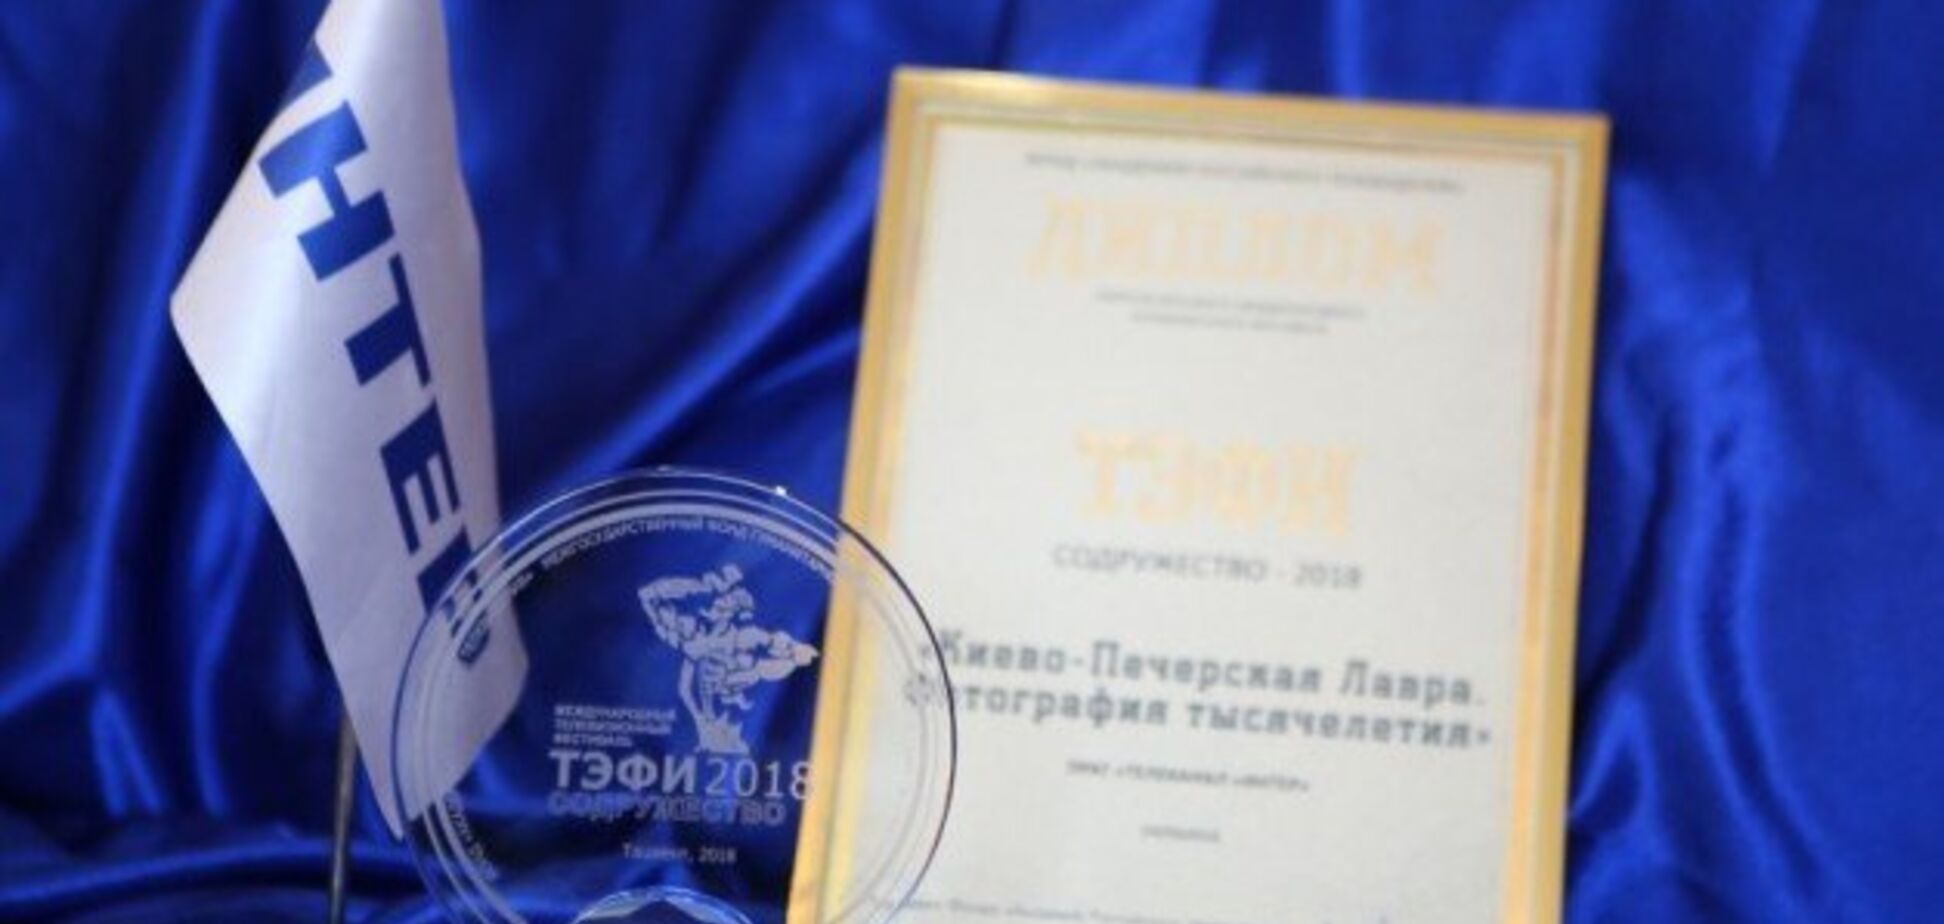 Скандальний український канал отримав престижну премію у Росії